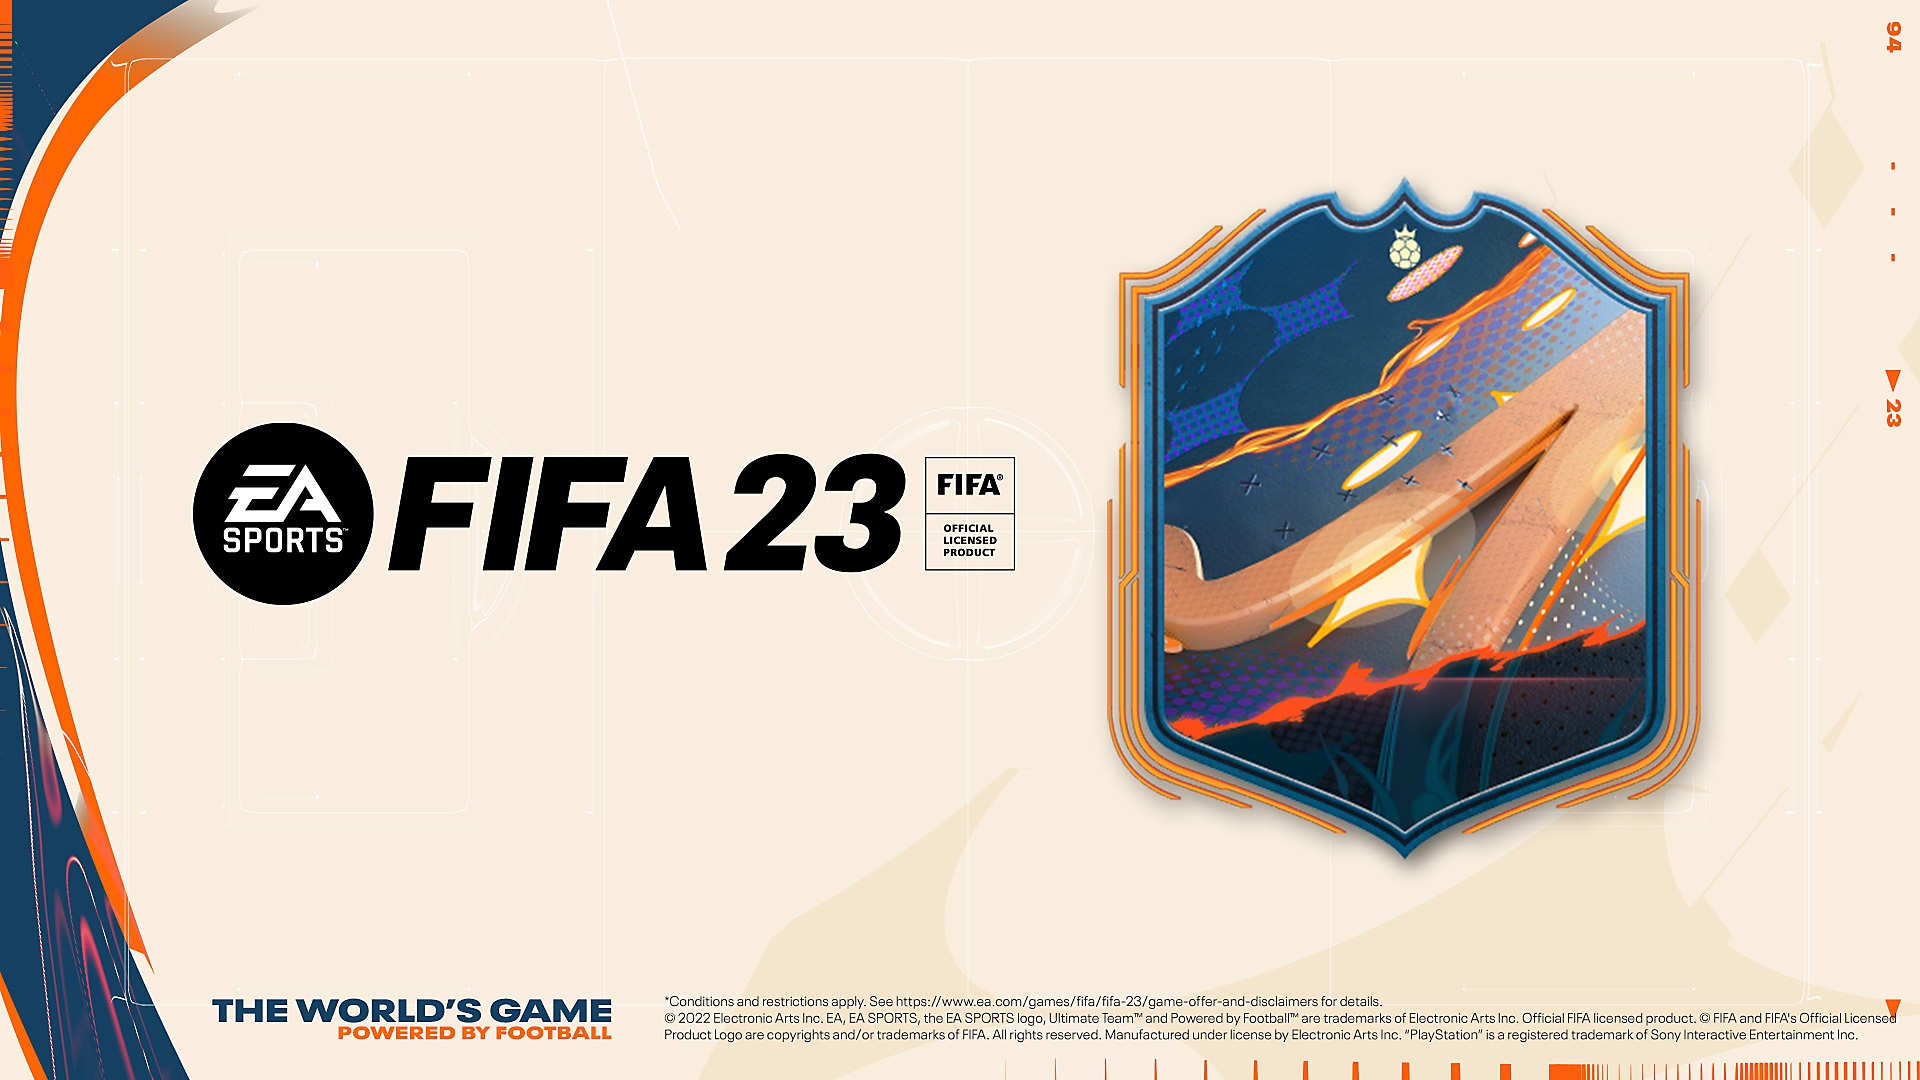 EA Sports FIFA 23 – grafik för förbeställningar som visar ett flerfärgat märke och FIFA 23-logotypen